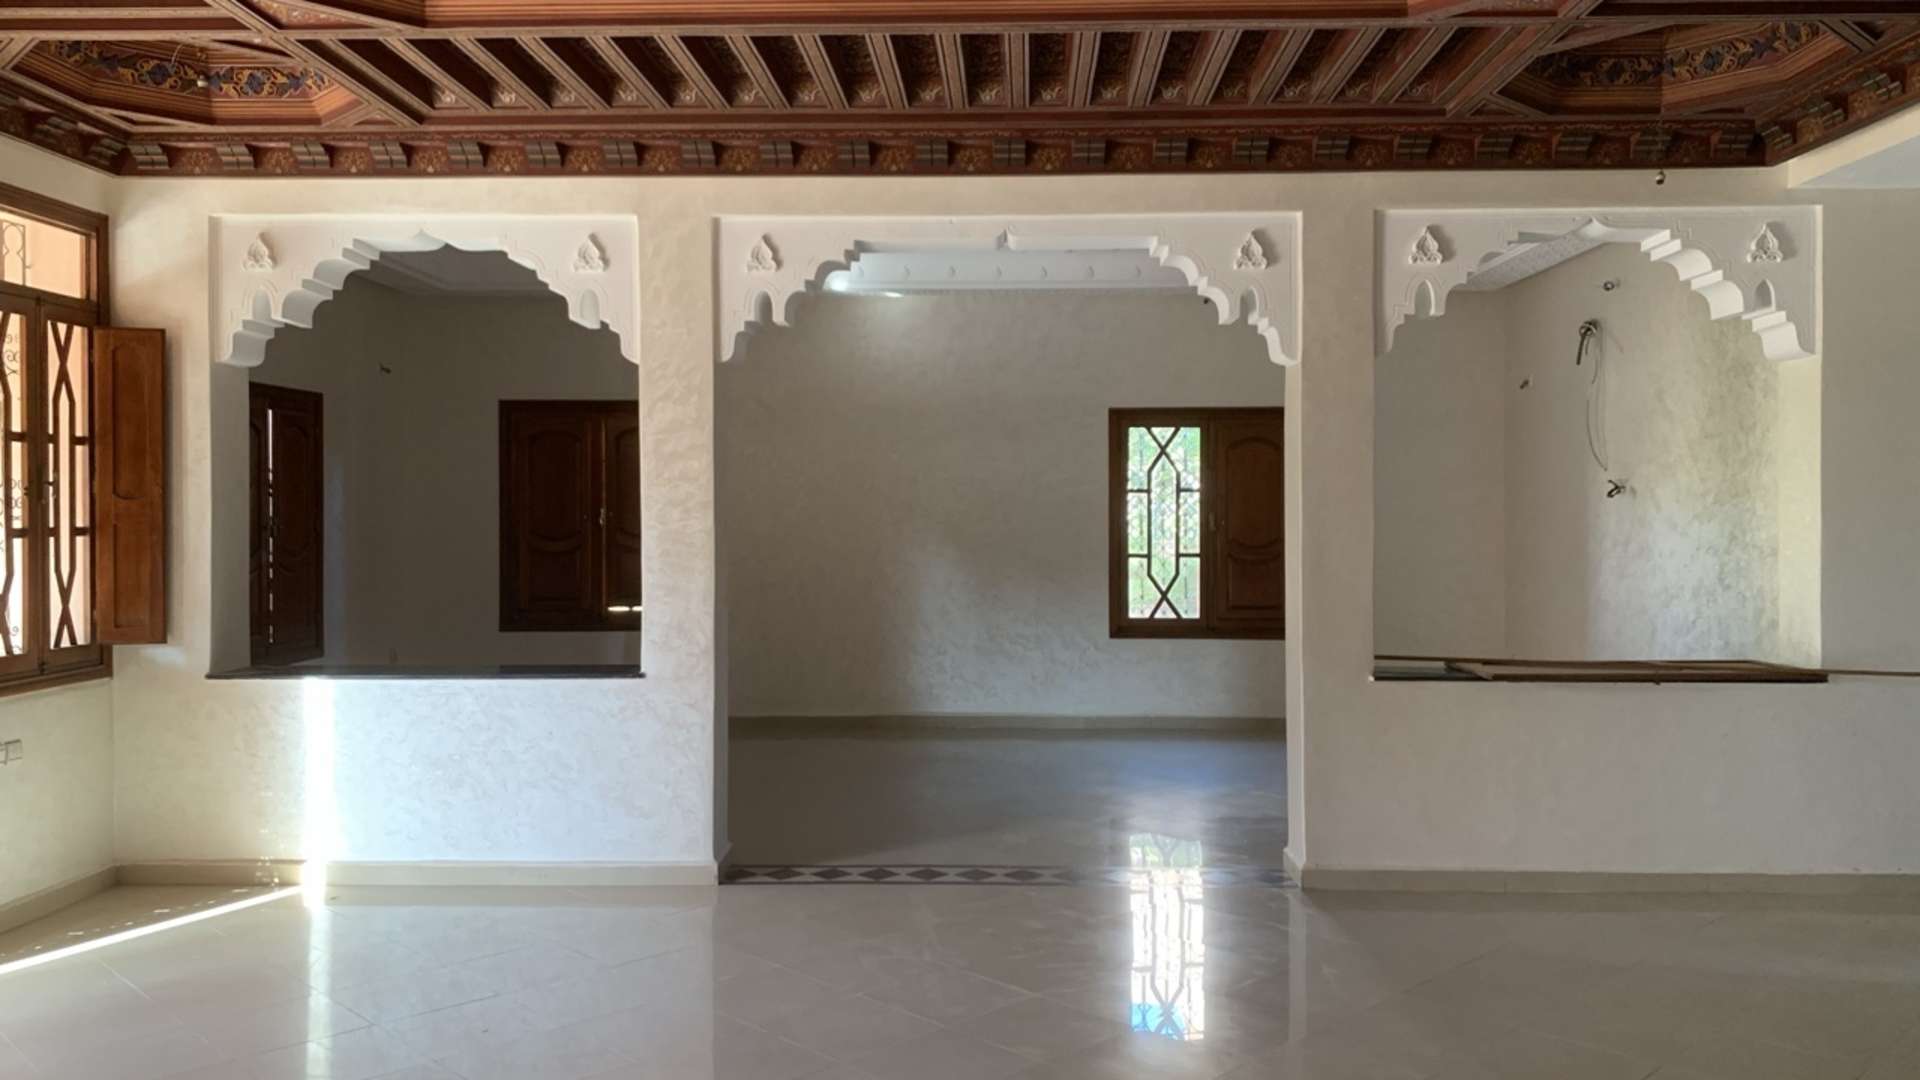 Vente,Villa,Villa de haut standing à vendre à Marrakech. 5 belles chambres. hammam, piscine,Marrakech,Route de Fès